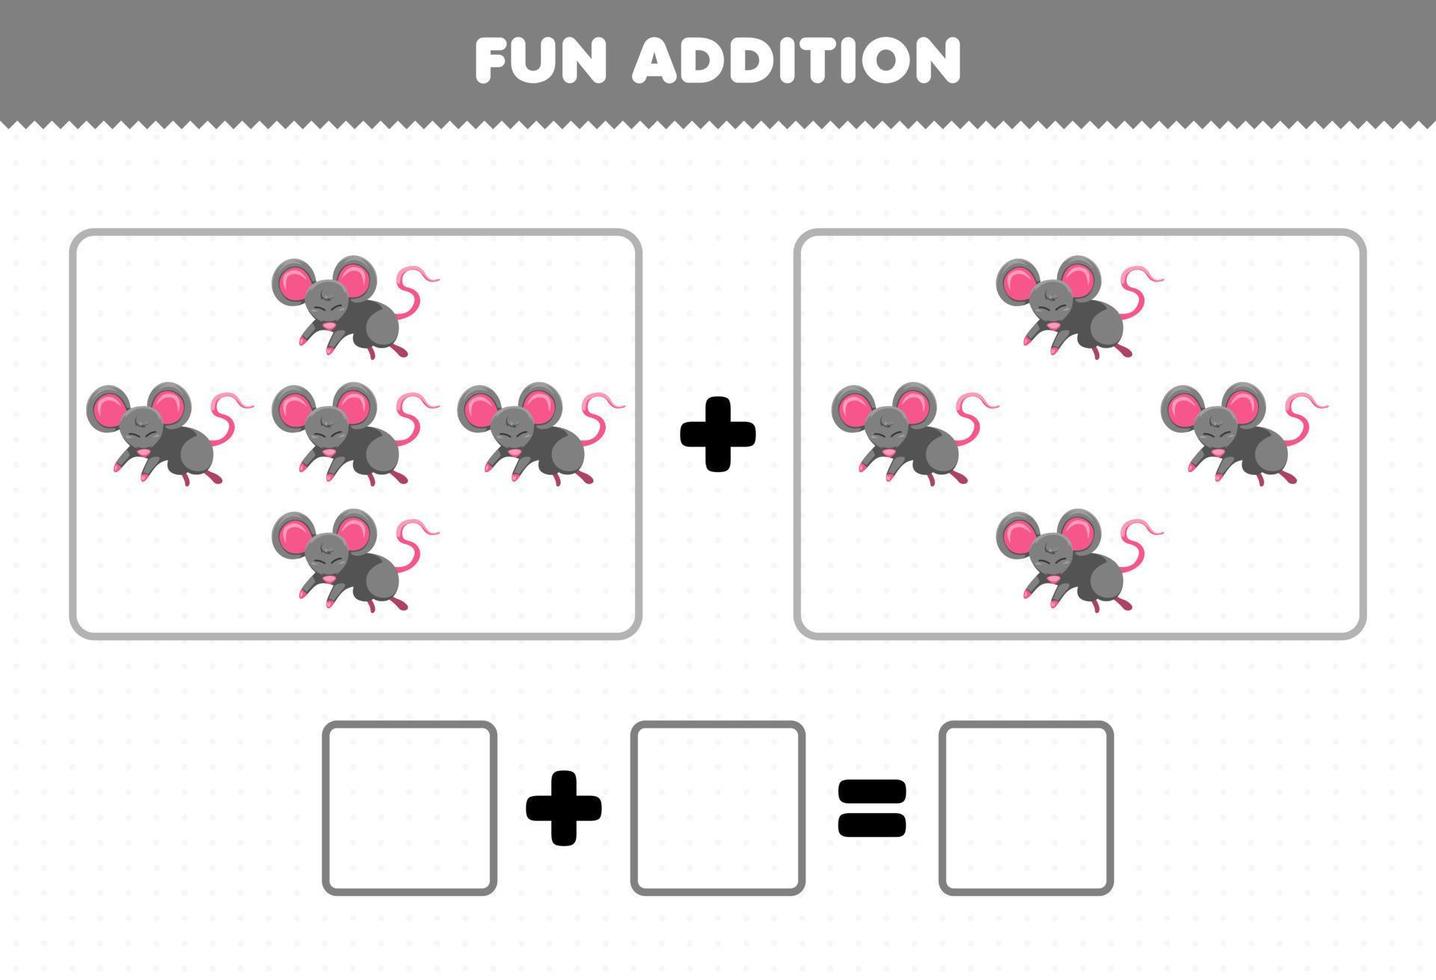 gioco educativo per bambini divertente aggiunta contando il foglio di lavoro delle immagini del topo animale simpatico cartone animato vettore